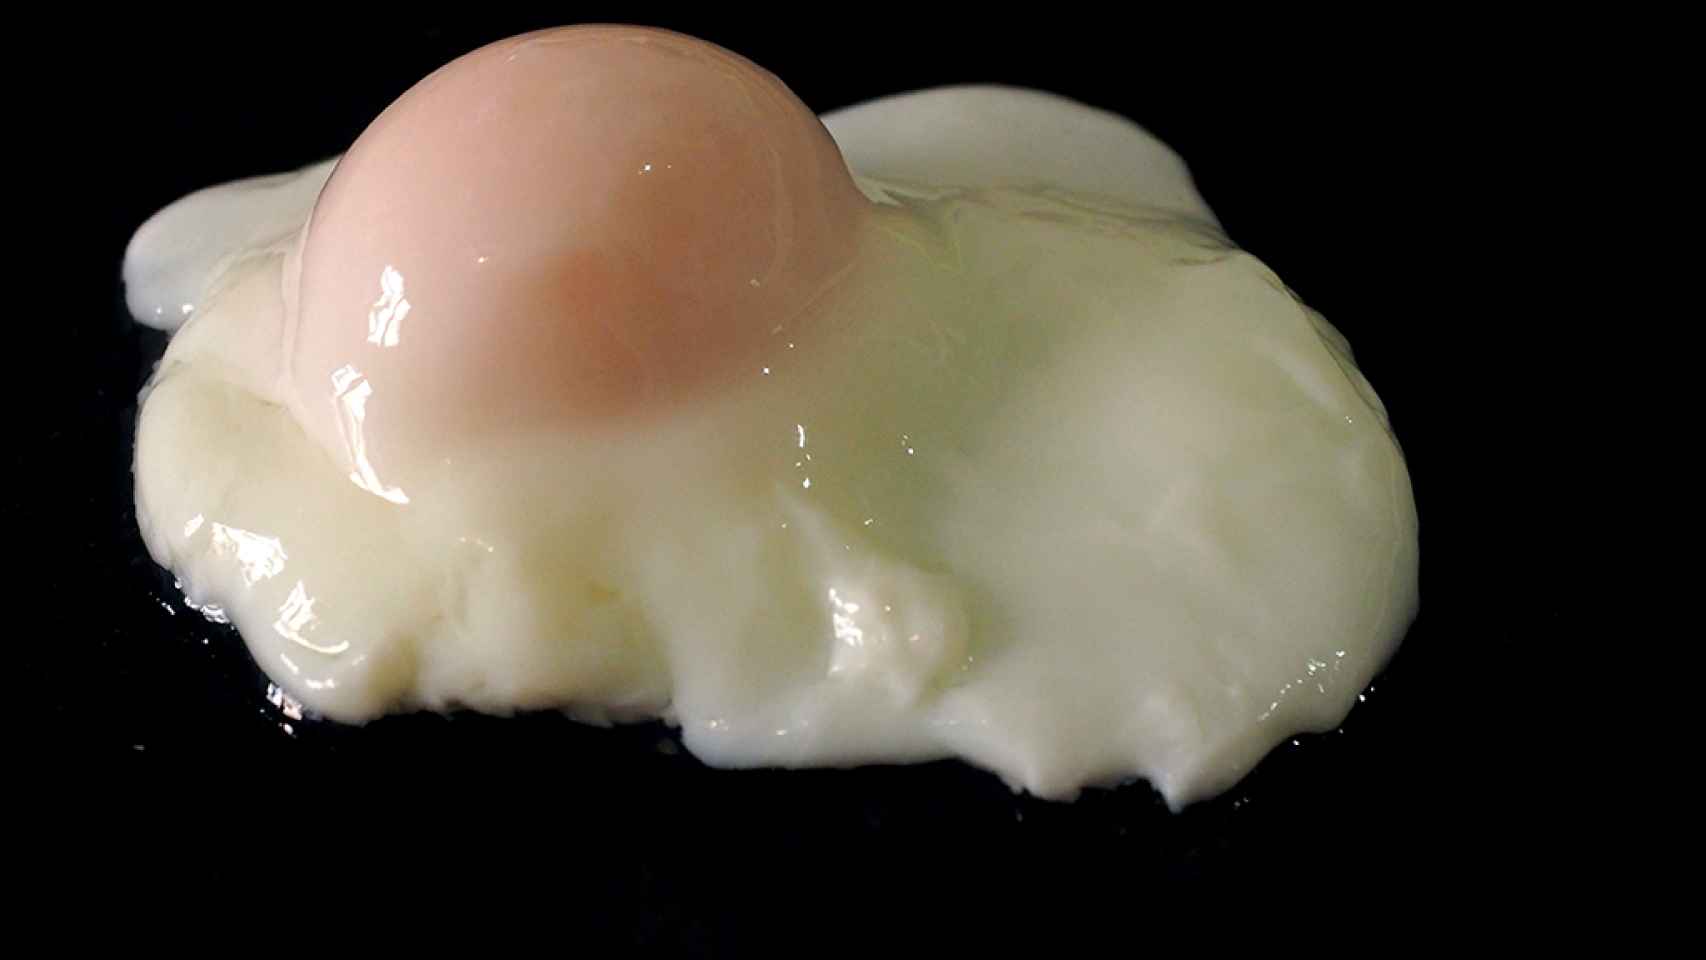 Cómo cocer huevos con Thermomix de forma fácil y cómoda